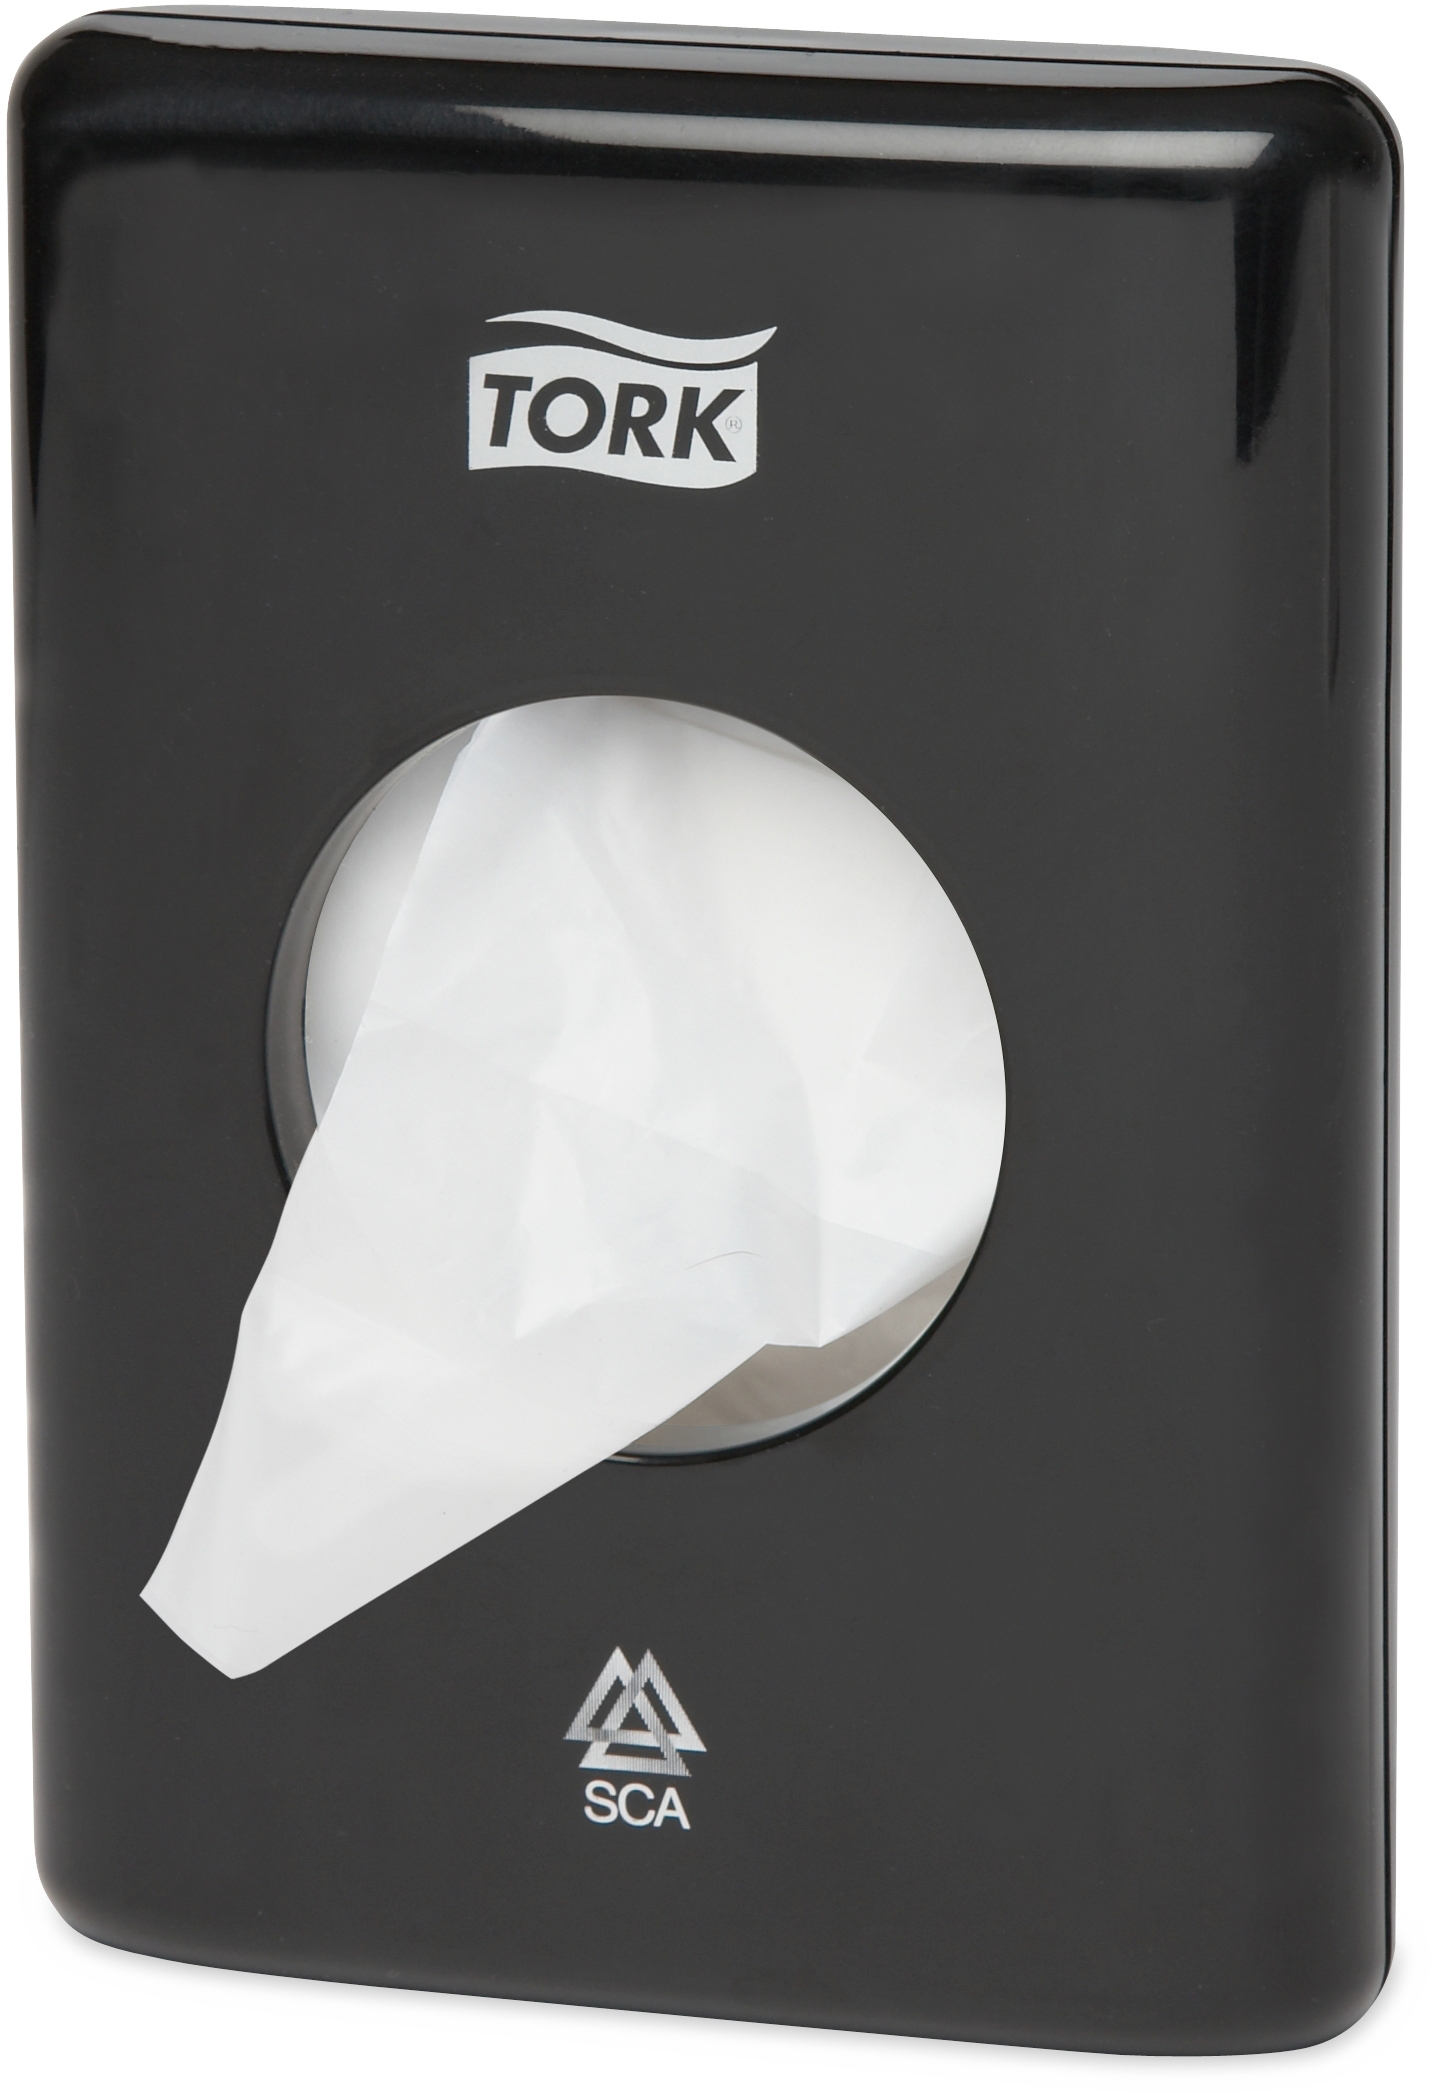 TORK Dispenser sachet hygiène B5 566008 noire 140x100x36mm noire 140x100x36mm